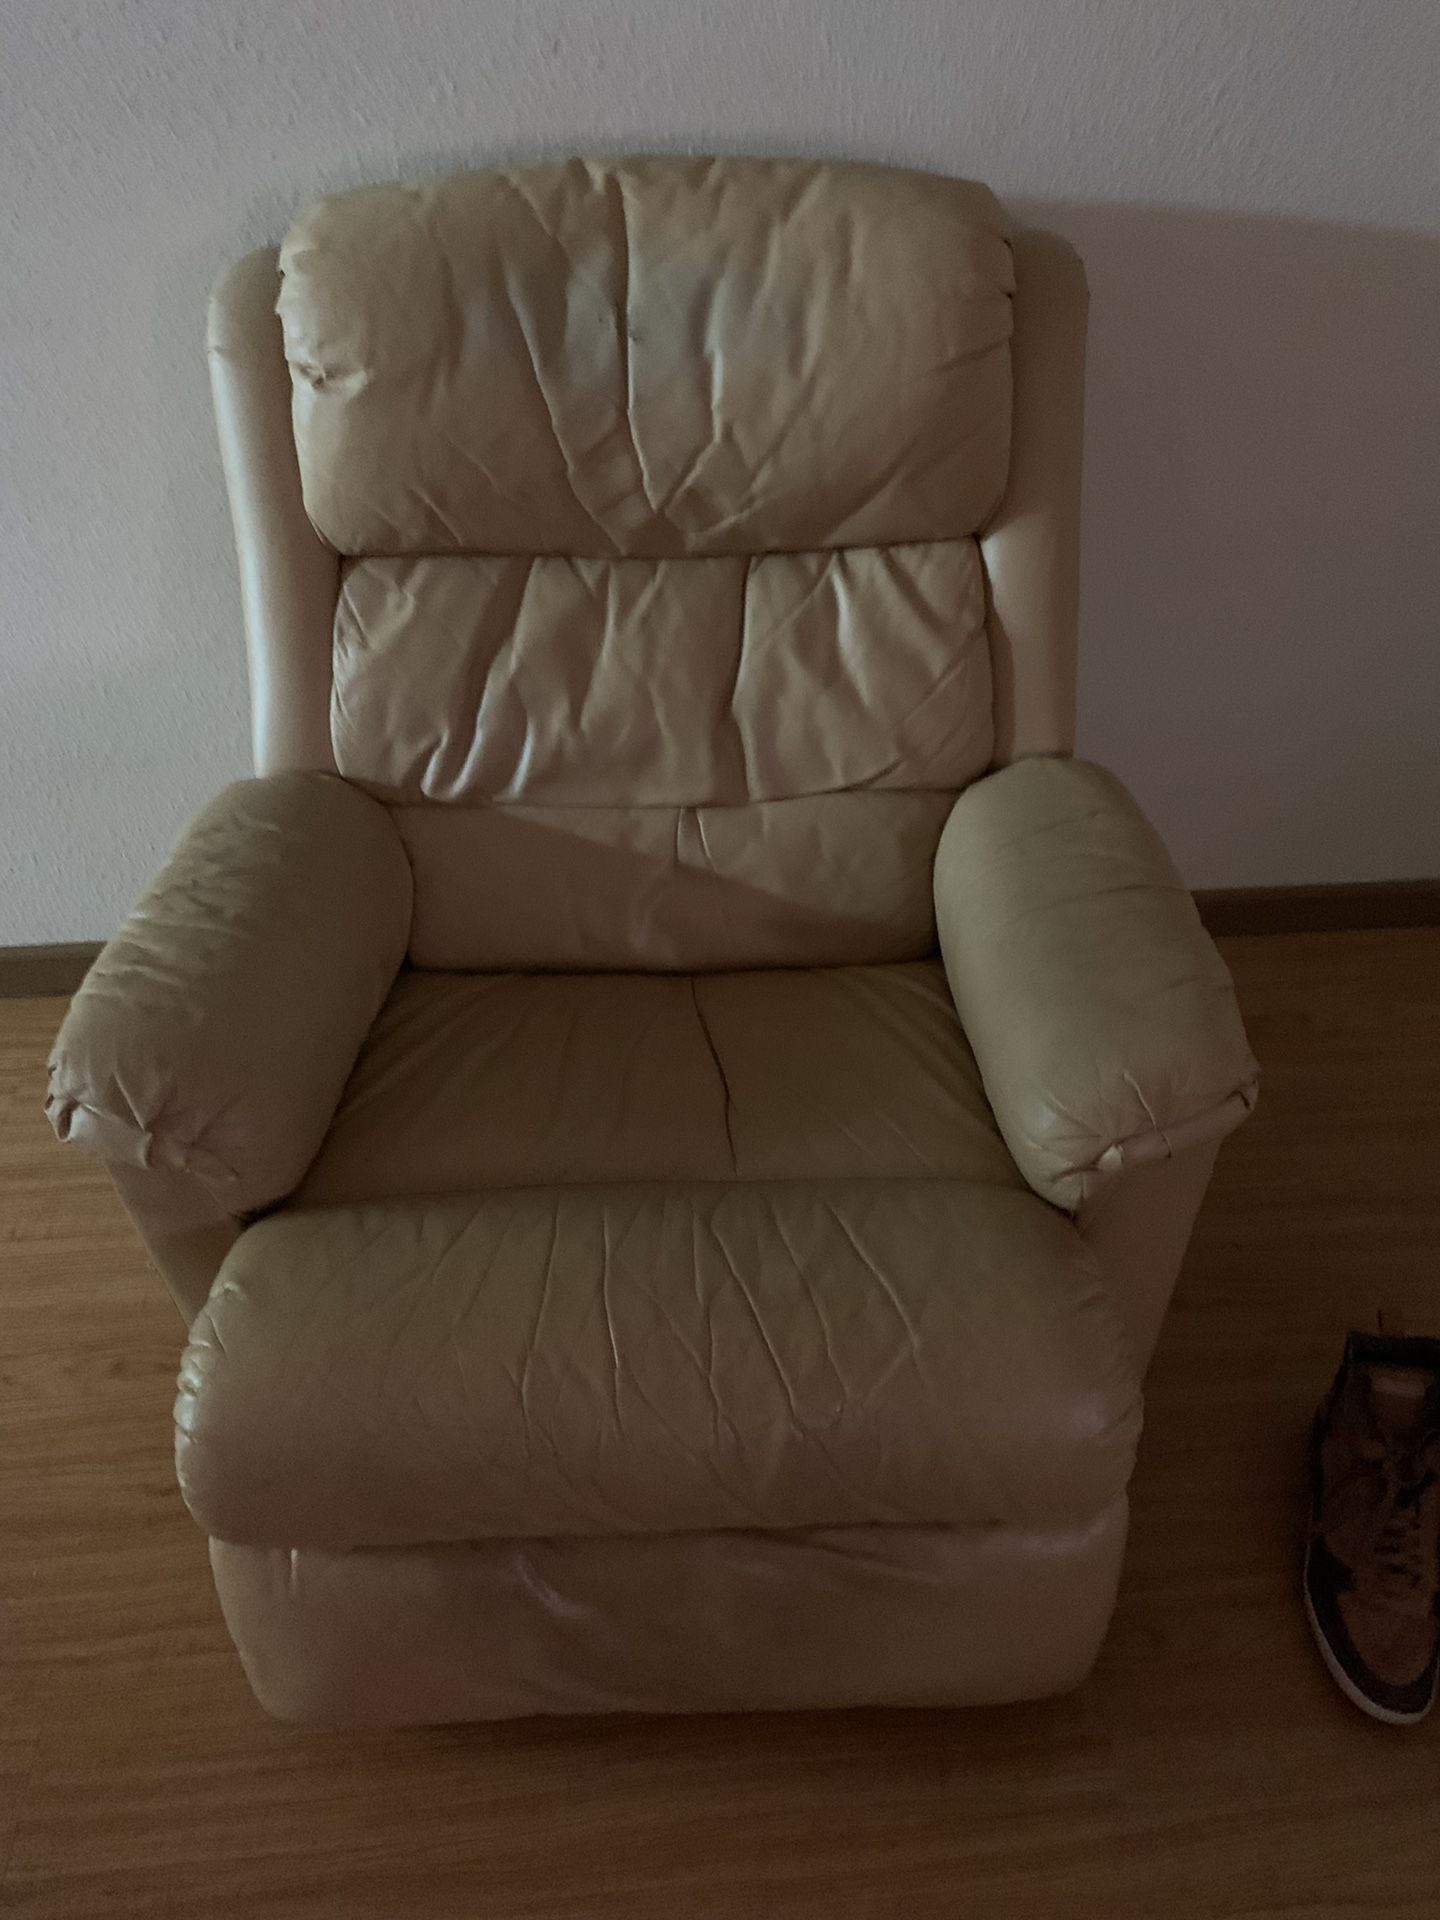 Cream leather recliner